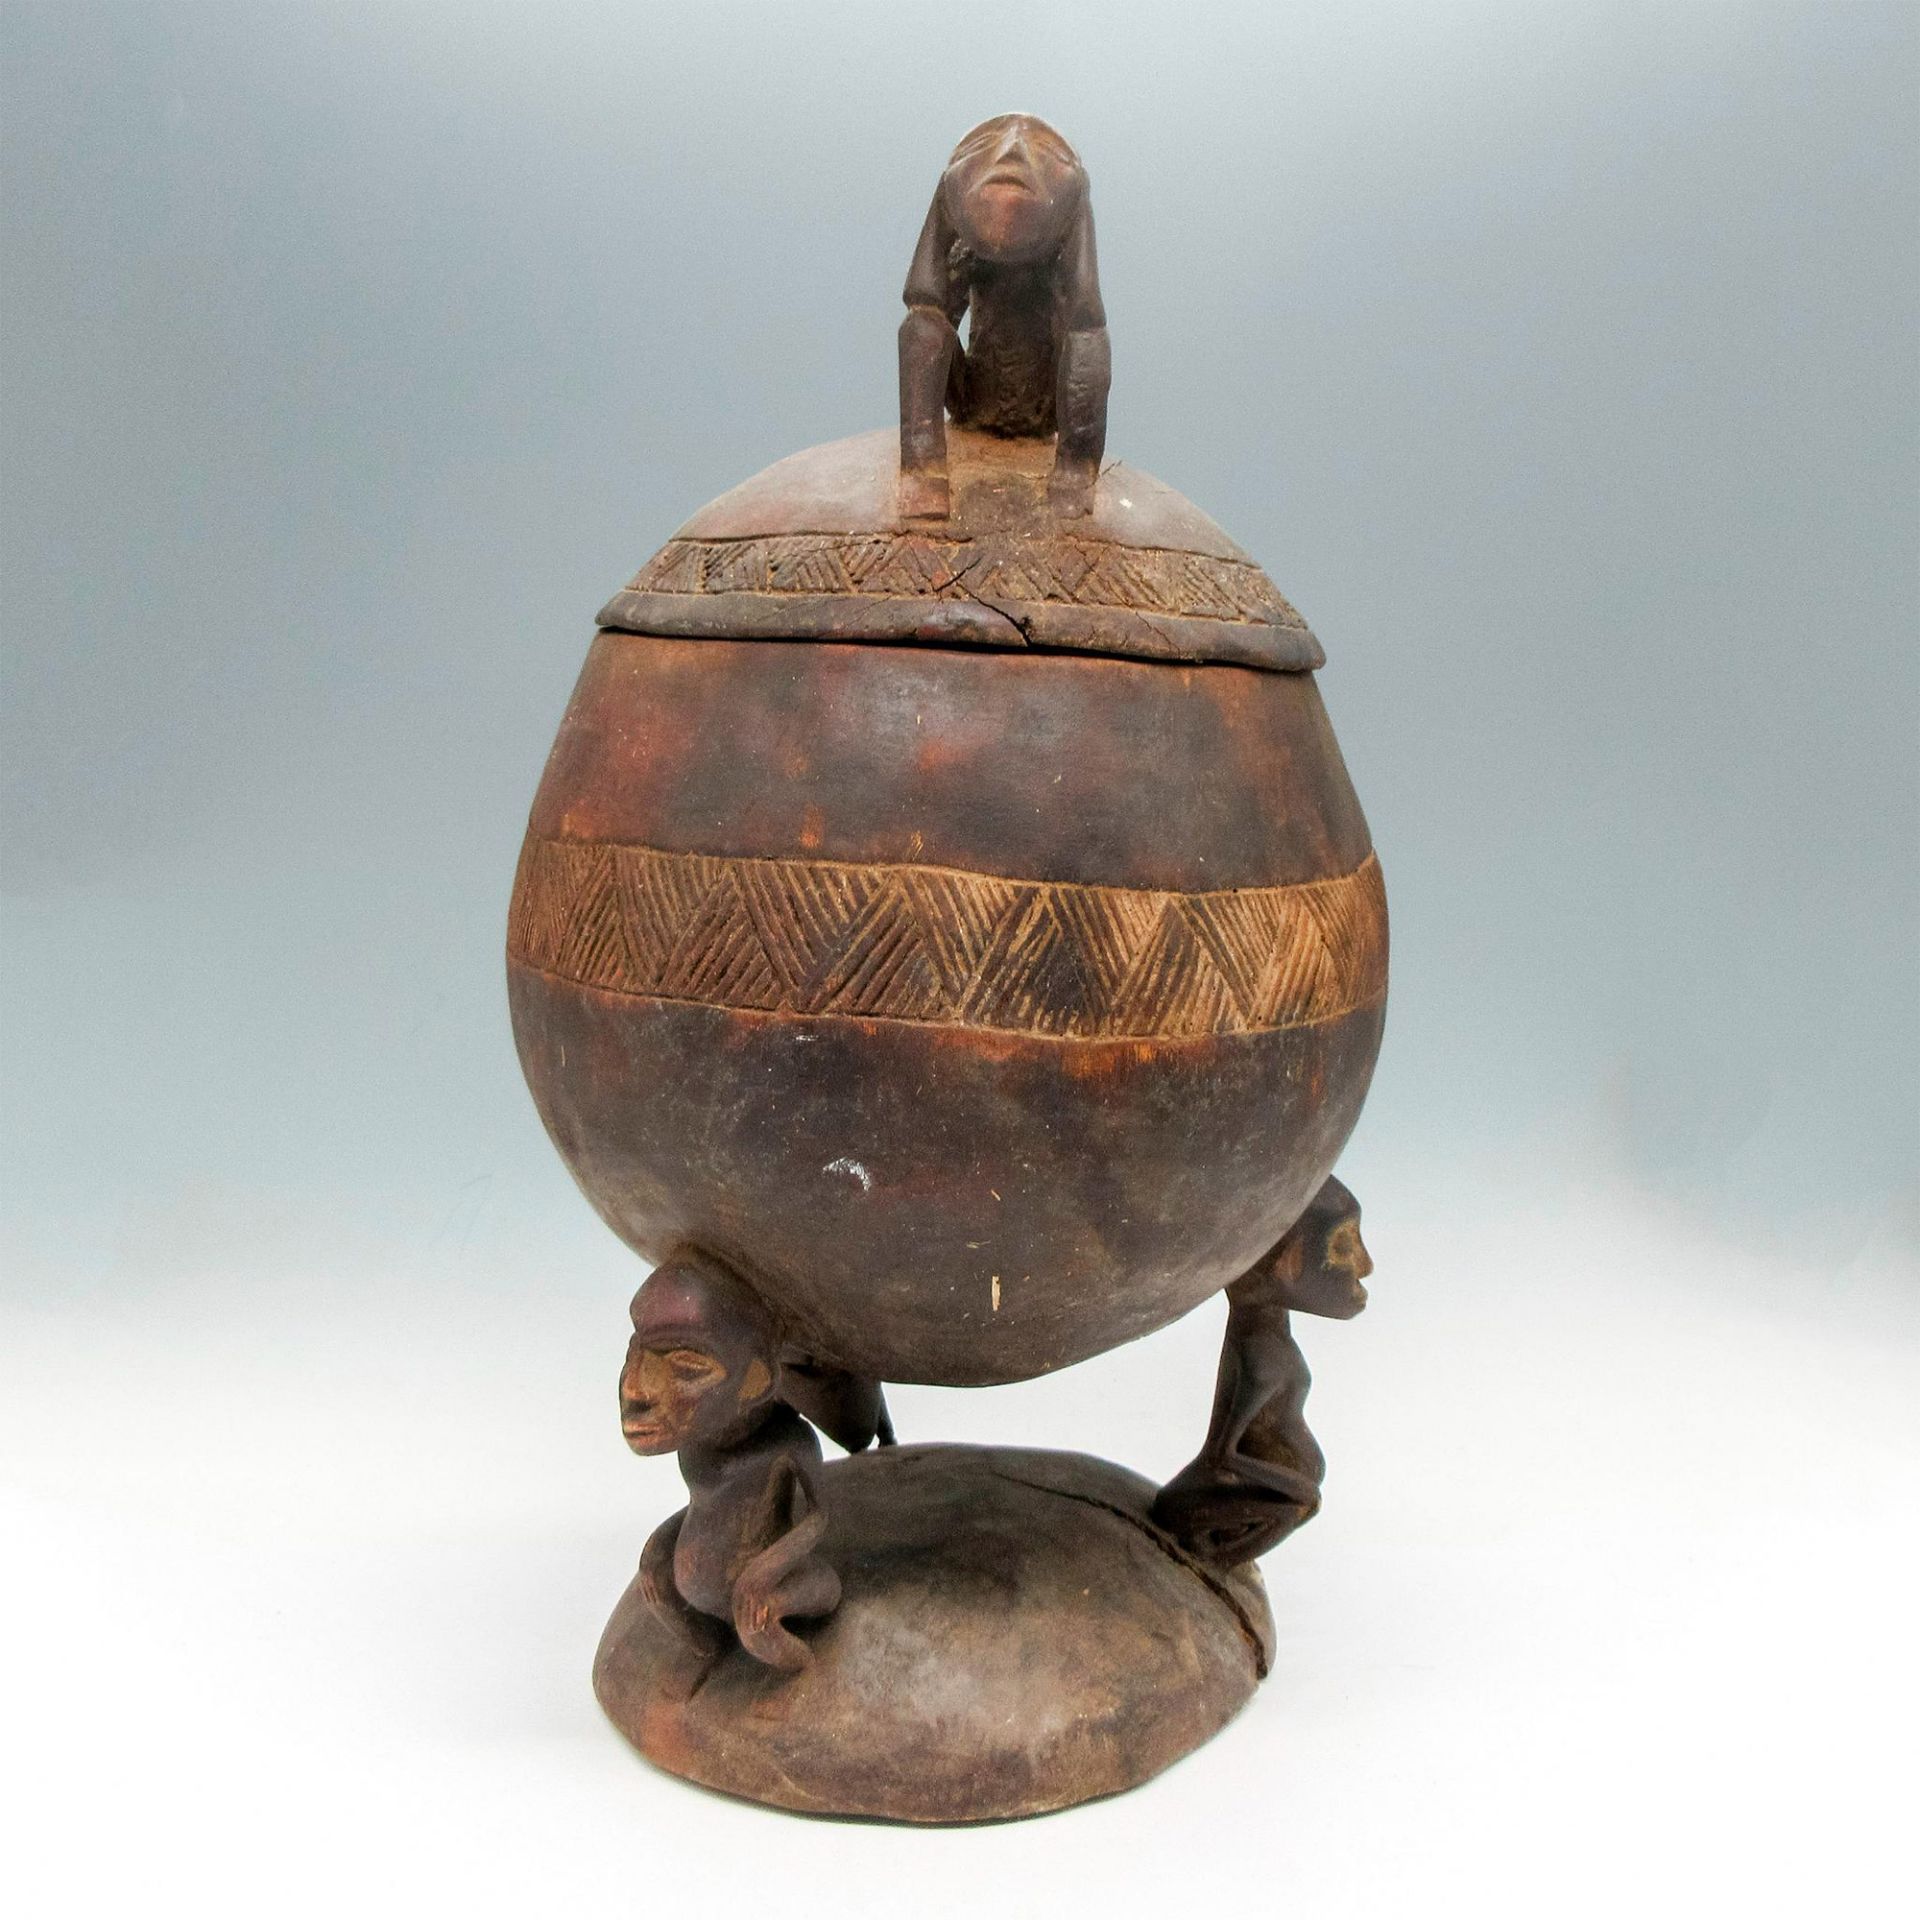 Vintage African Carved Wooden Lidded Medicine Bowl - Image 2 of 4